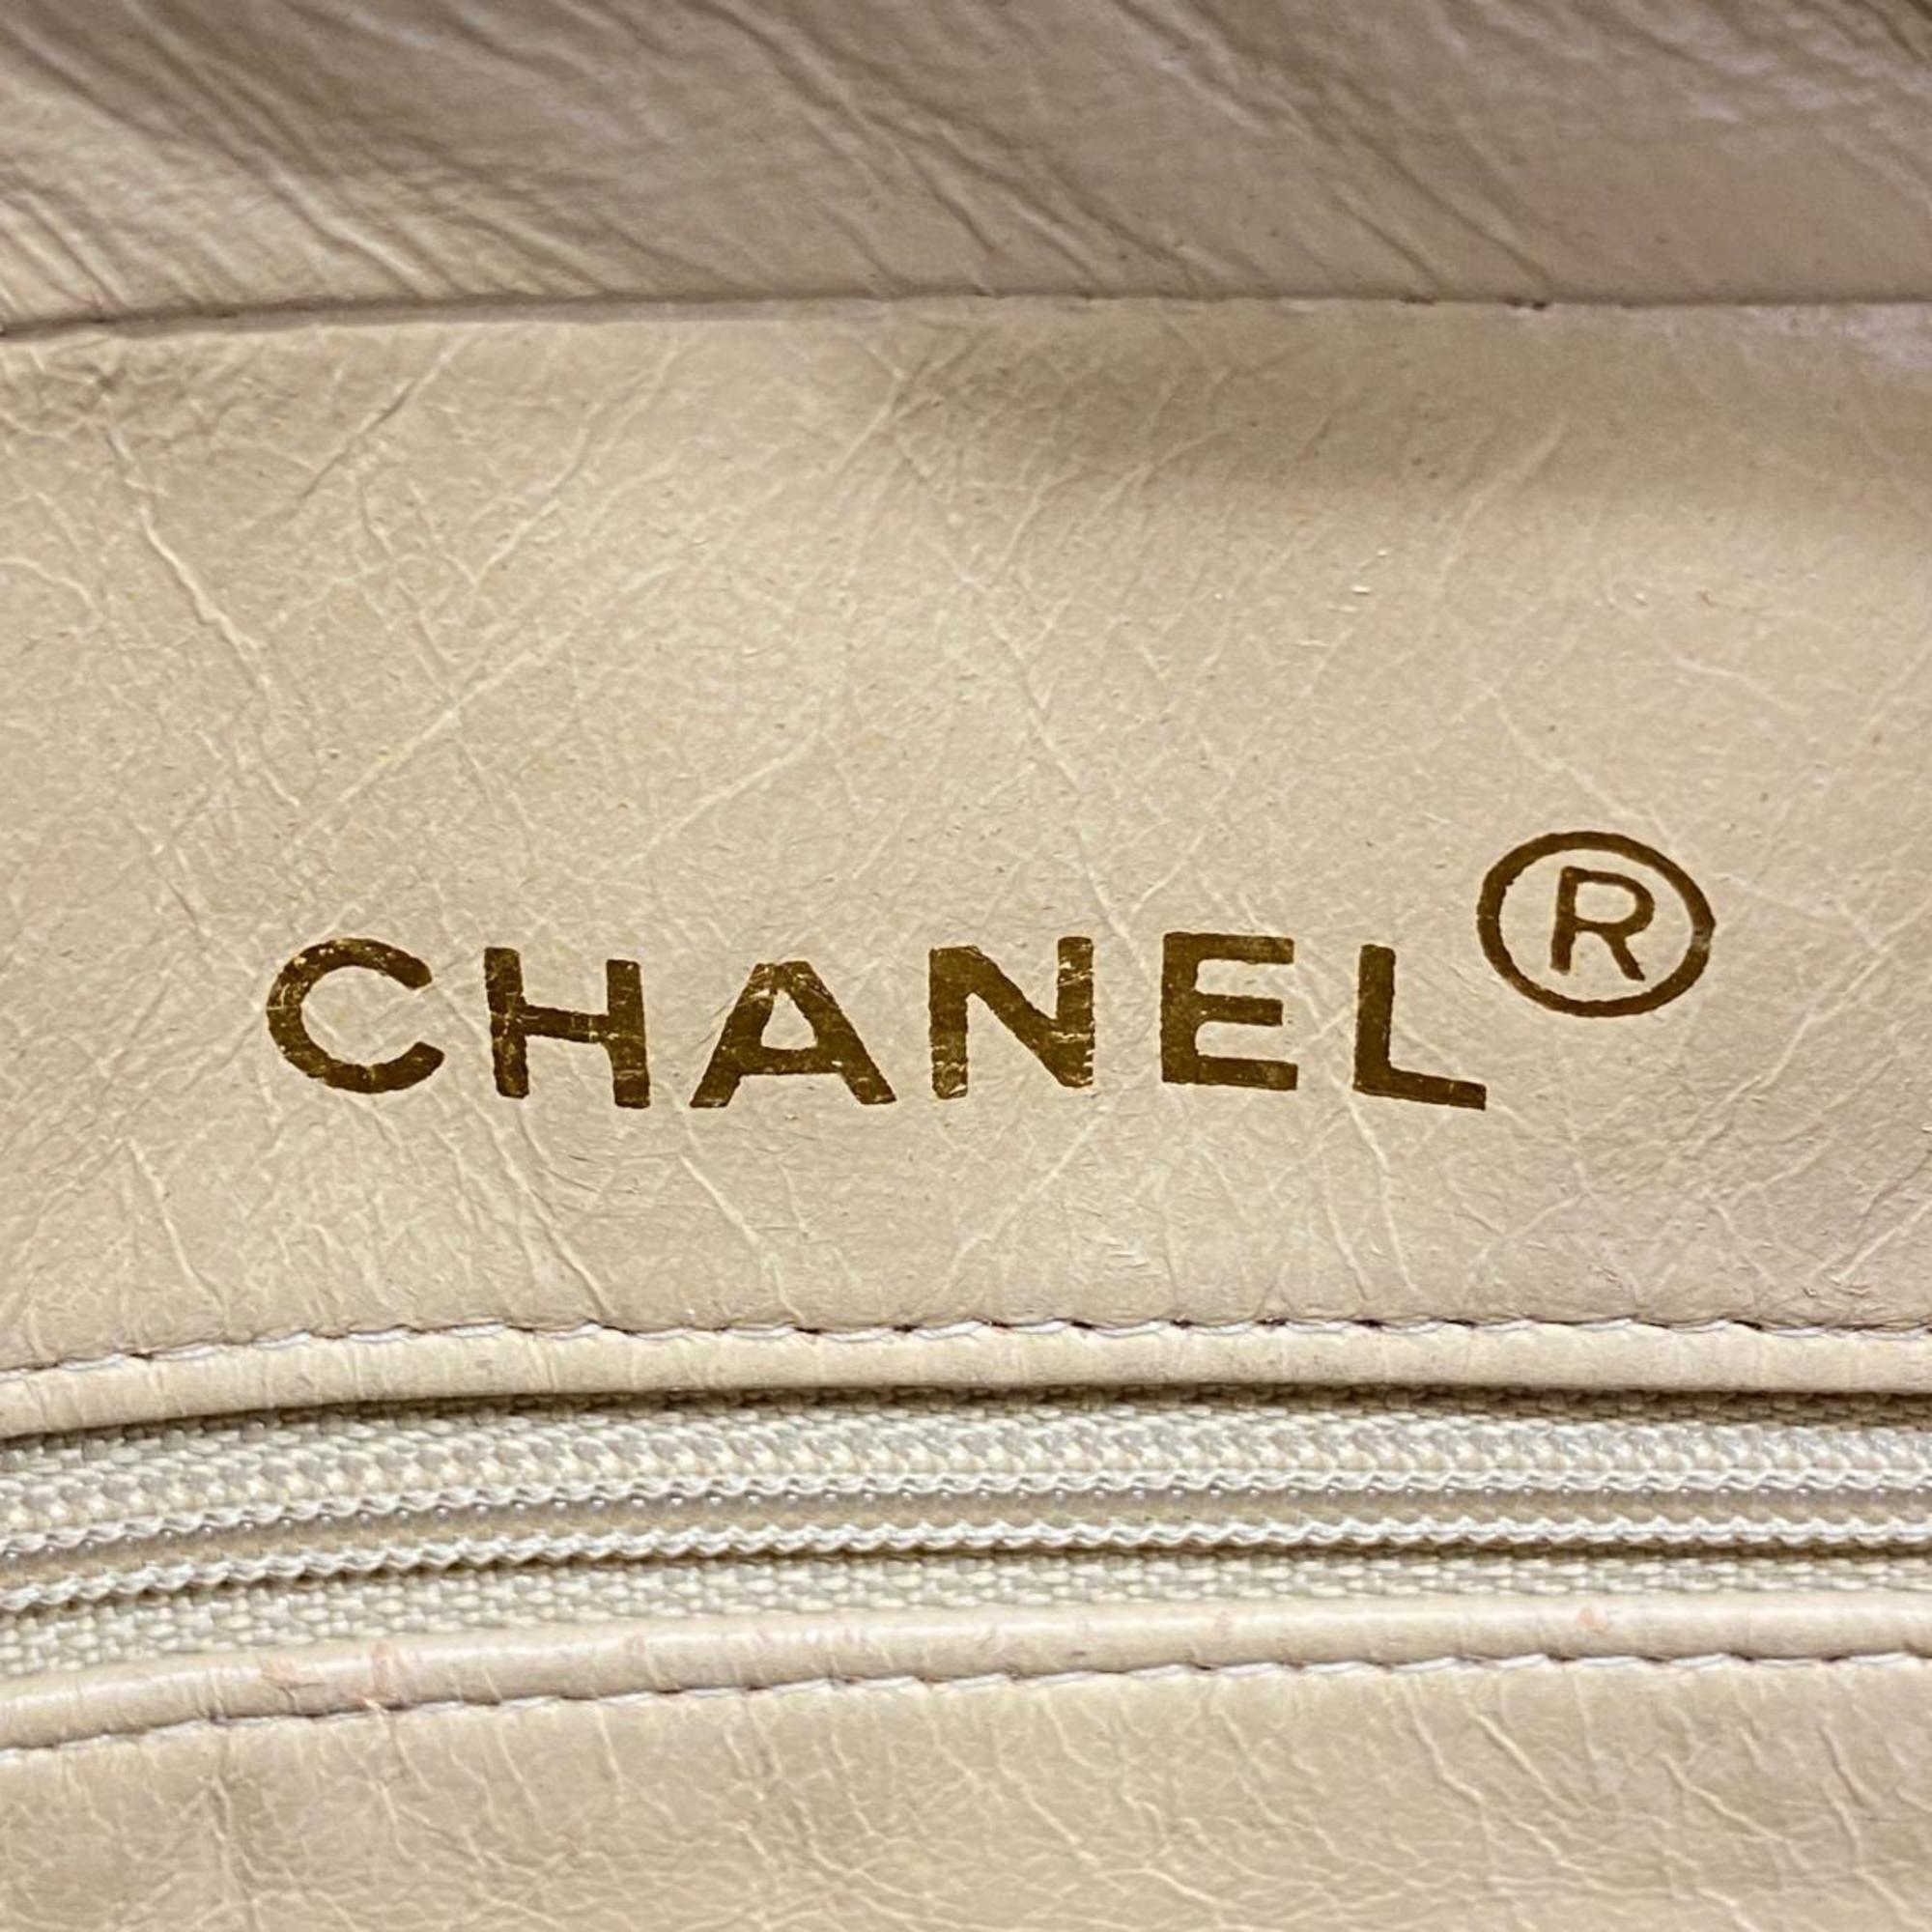 シャネル(Chanel) シャネル ショルダーバッグ マトラッセ 付きショルダー ラムスキン ベージュ   レディース